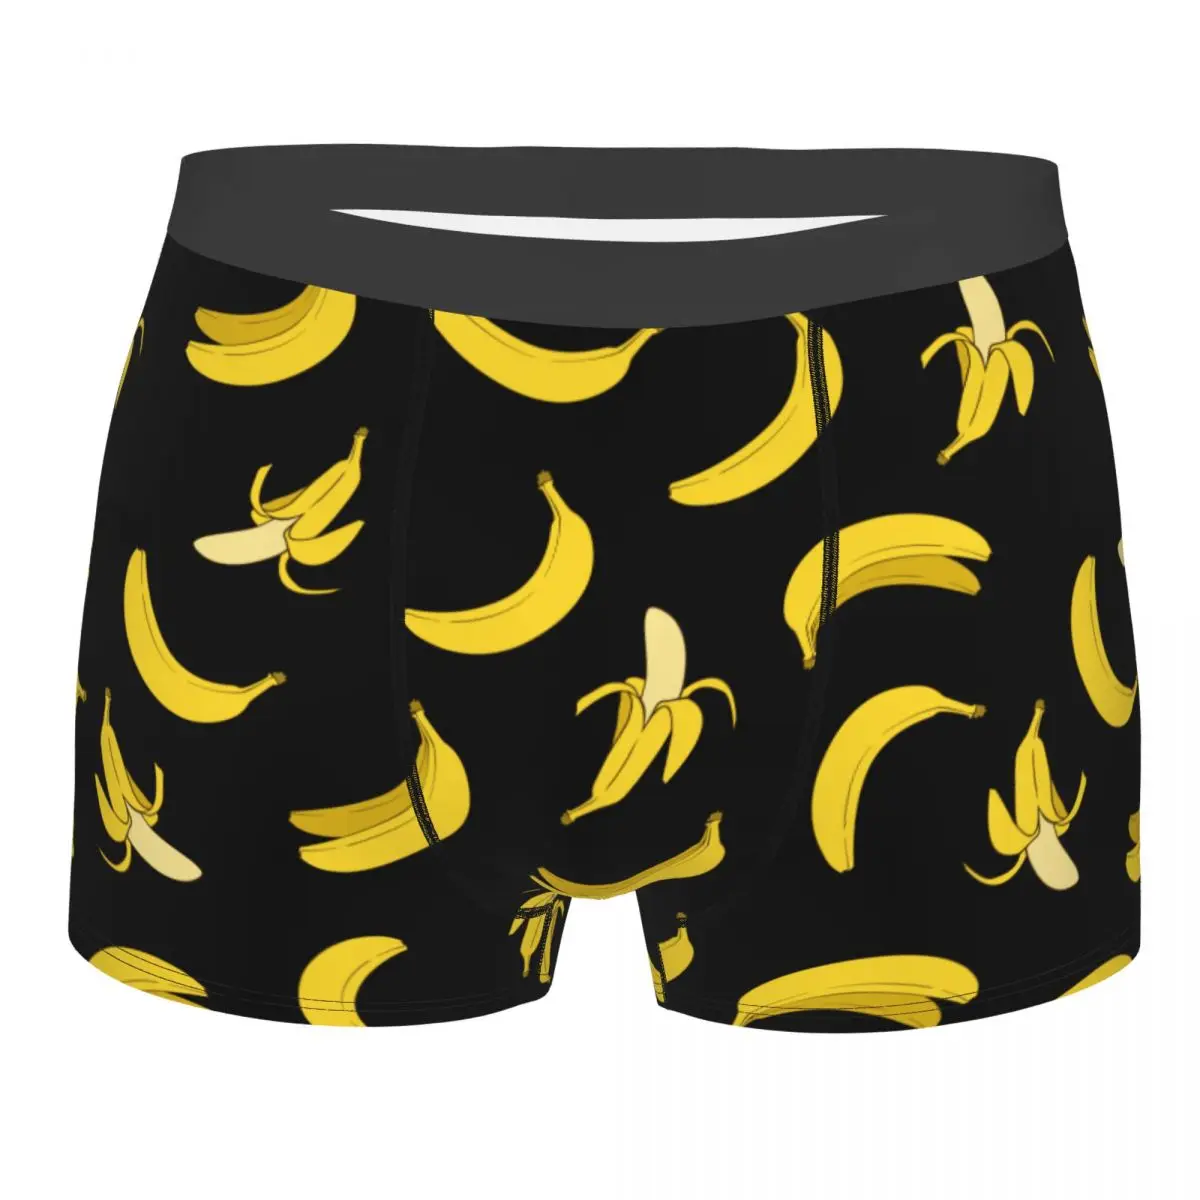 Divertente Boxer Banana Shorts mutandine slip uomo intimo frutta mutande morbide per Homme Plus Size